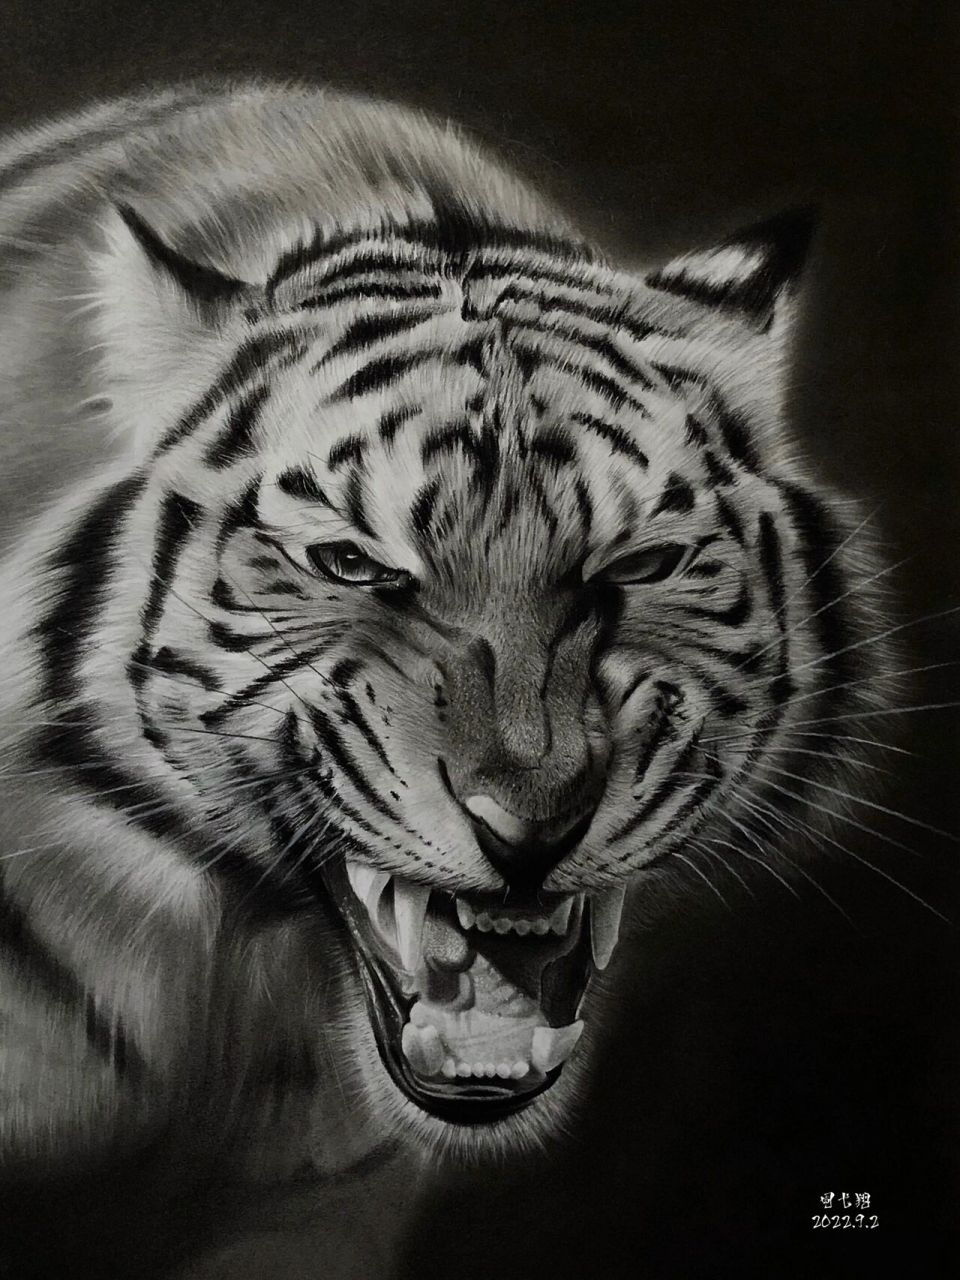 【素描动物】虎年画虎–威武霸气的老虎91 老虎是森林百兽之王,象征